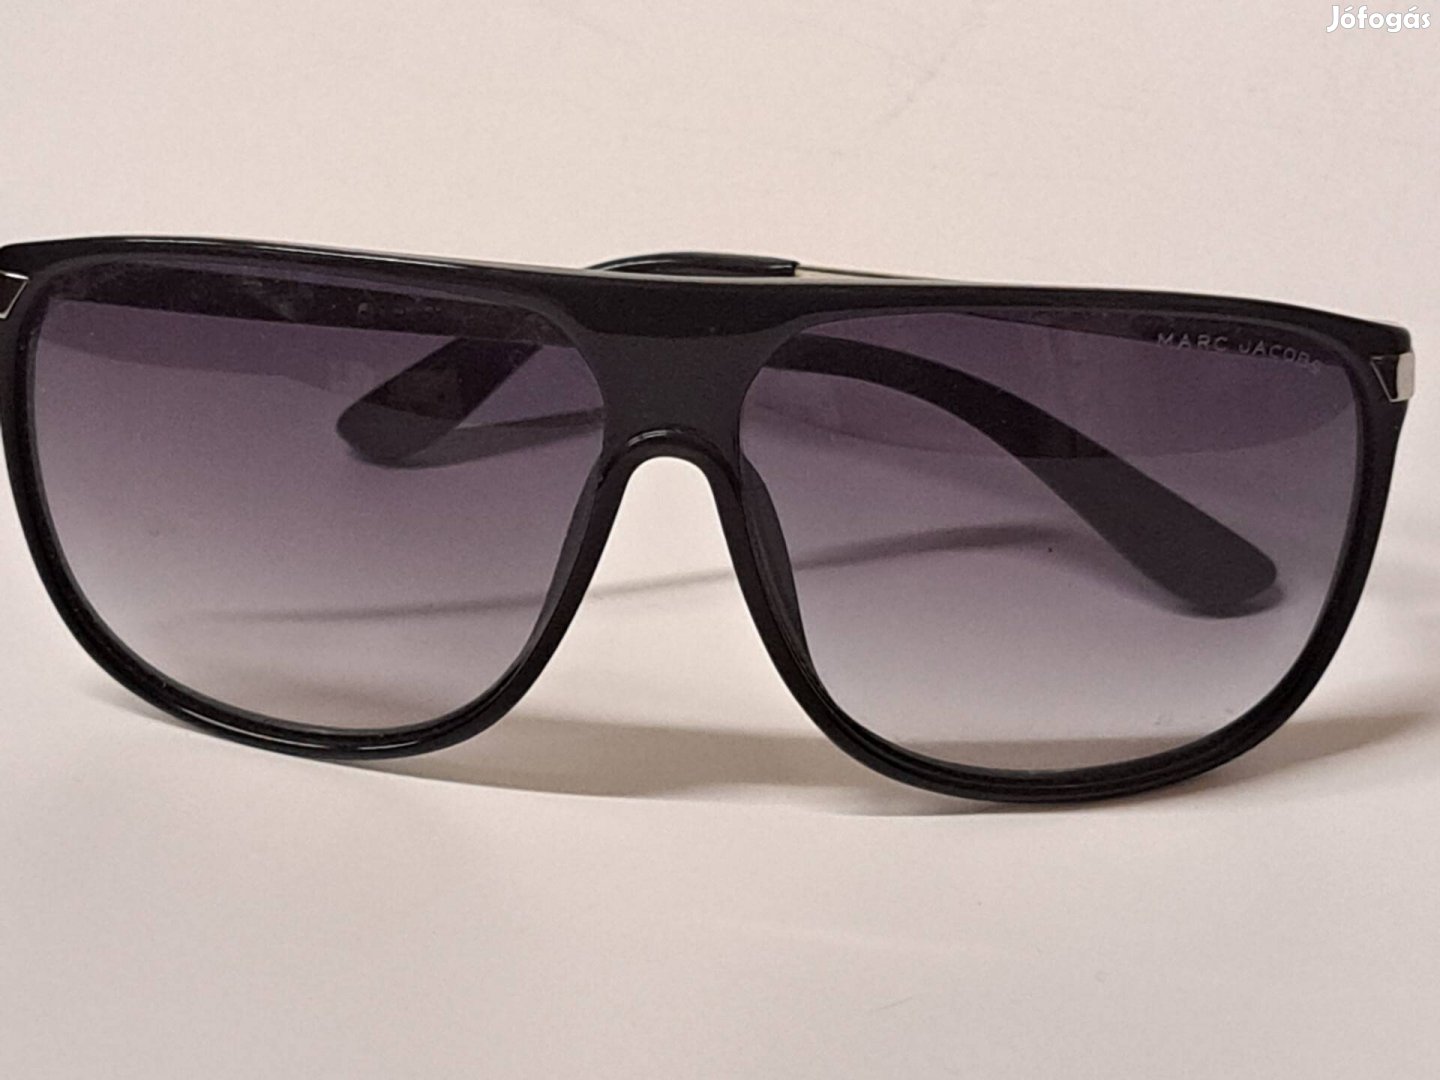 Marc Jacobs ferfi napszemüveg 